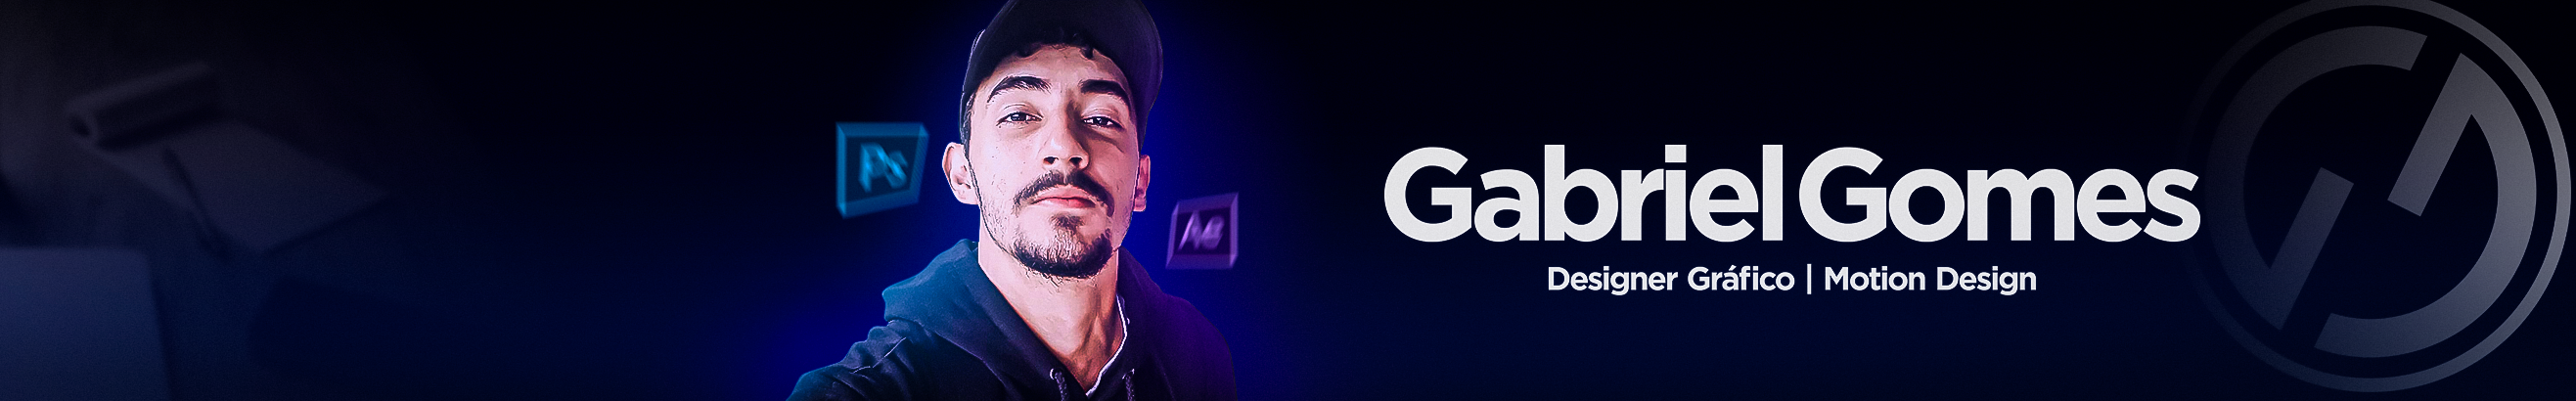 Gabriel Gomess profilbanner